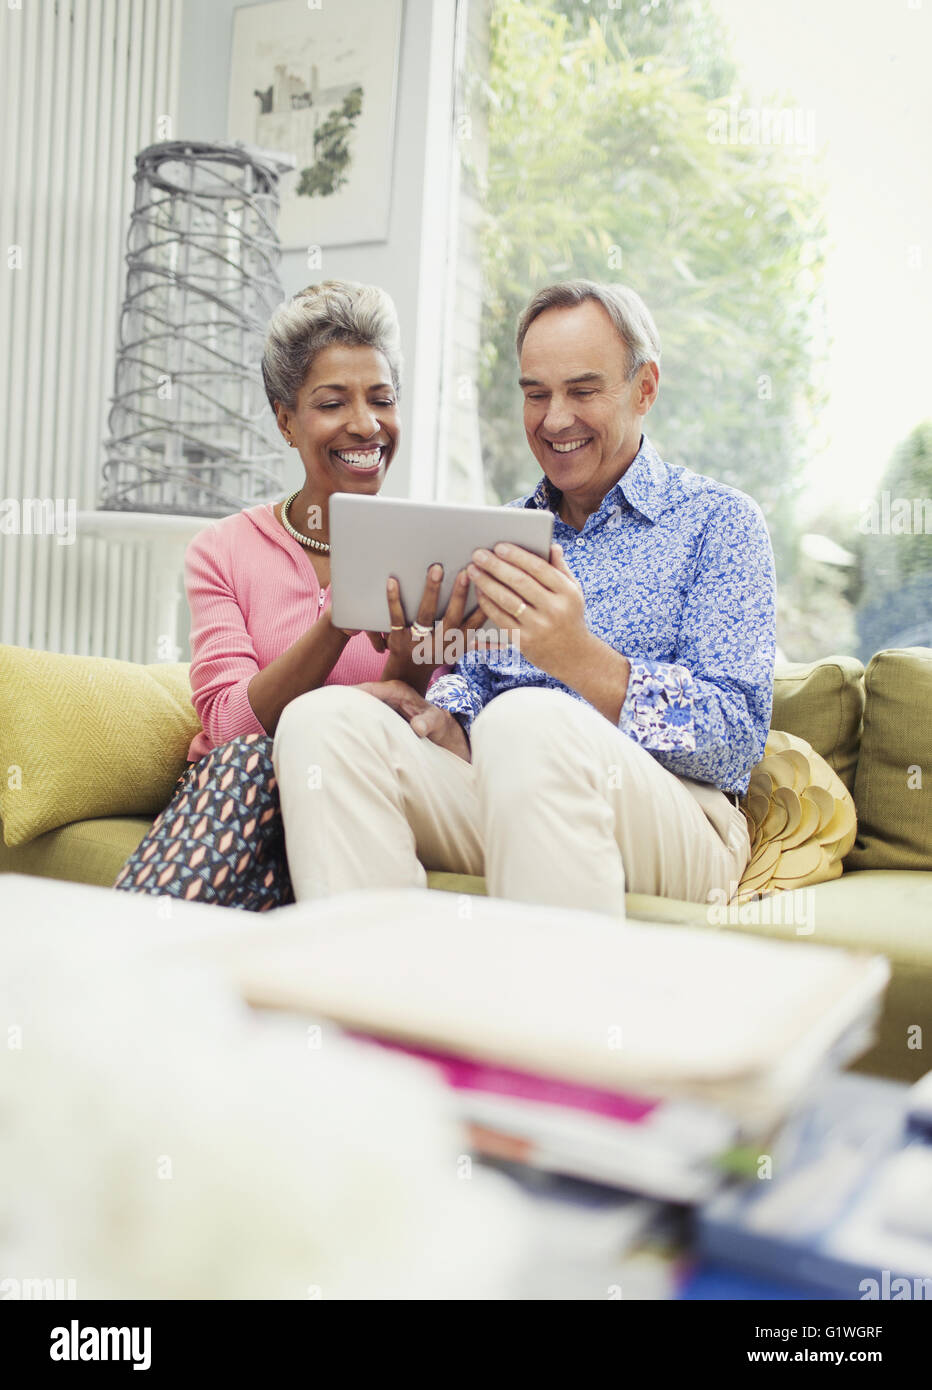 Sonriente pareja compartiendo tableta digital en el sofá de la sala Foto de stock